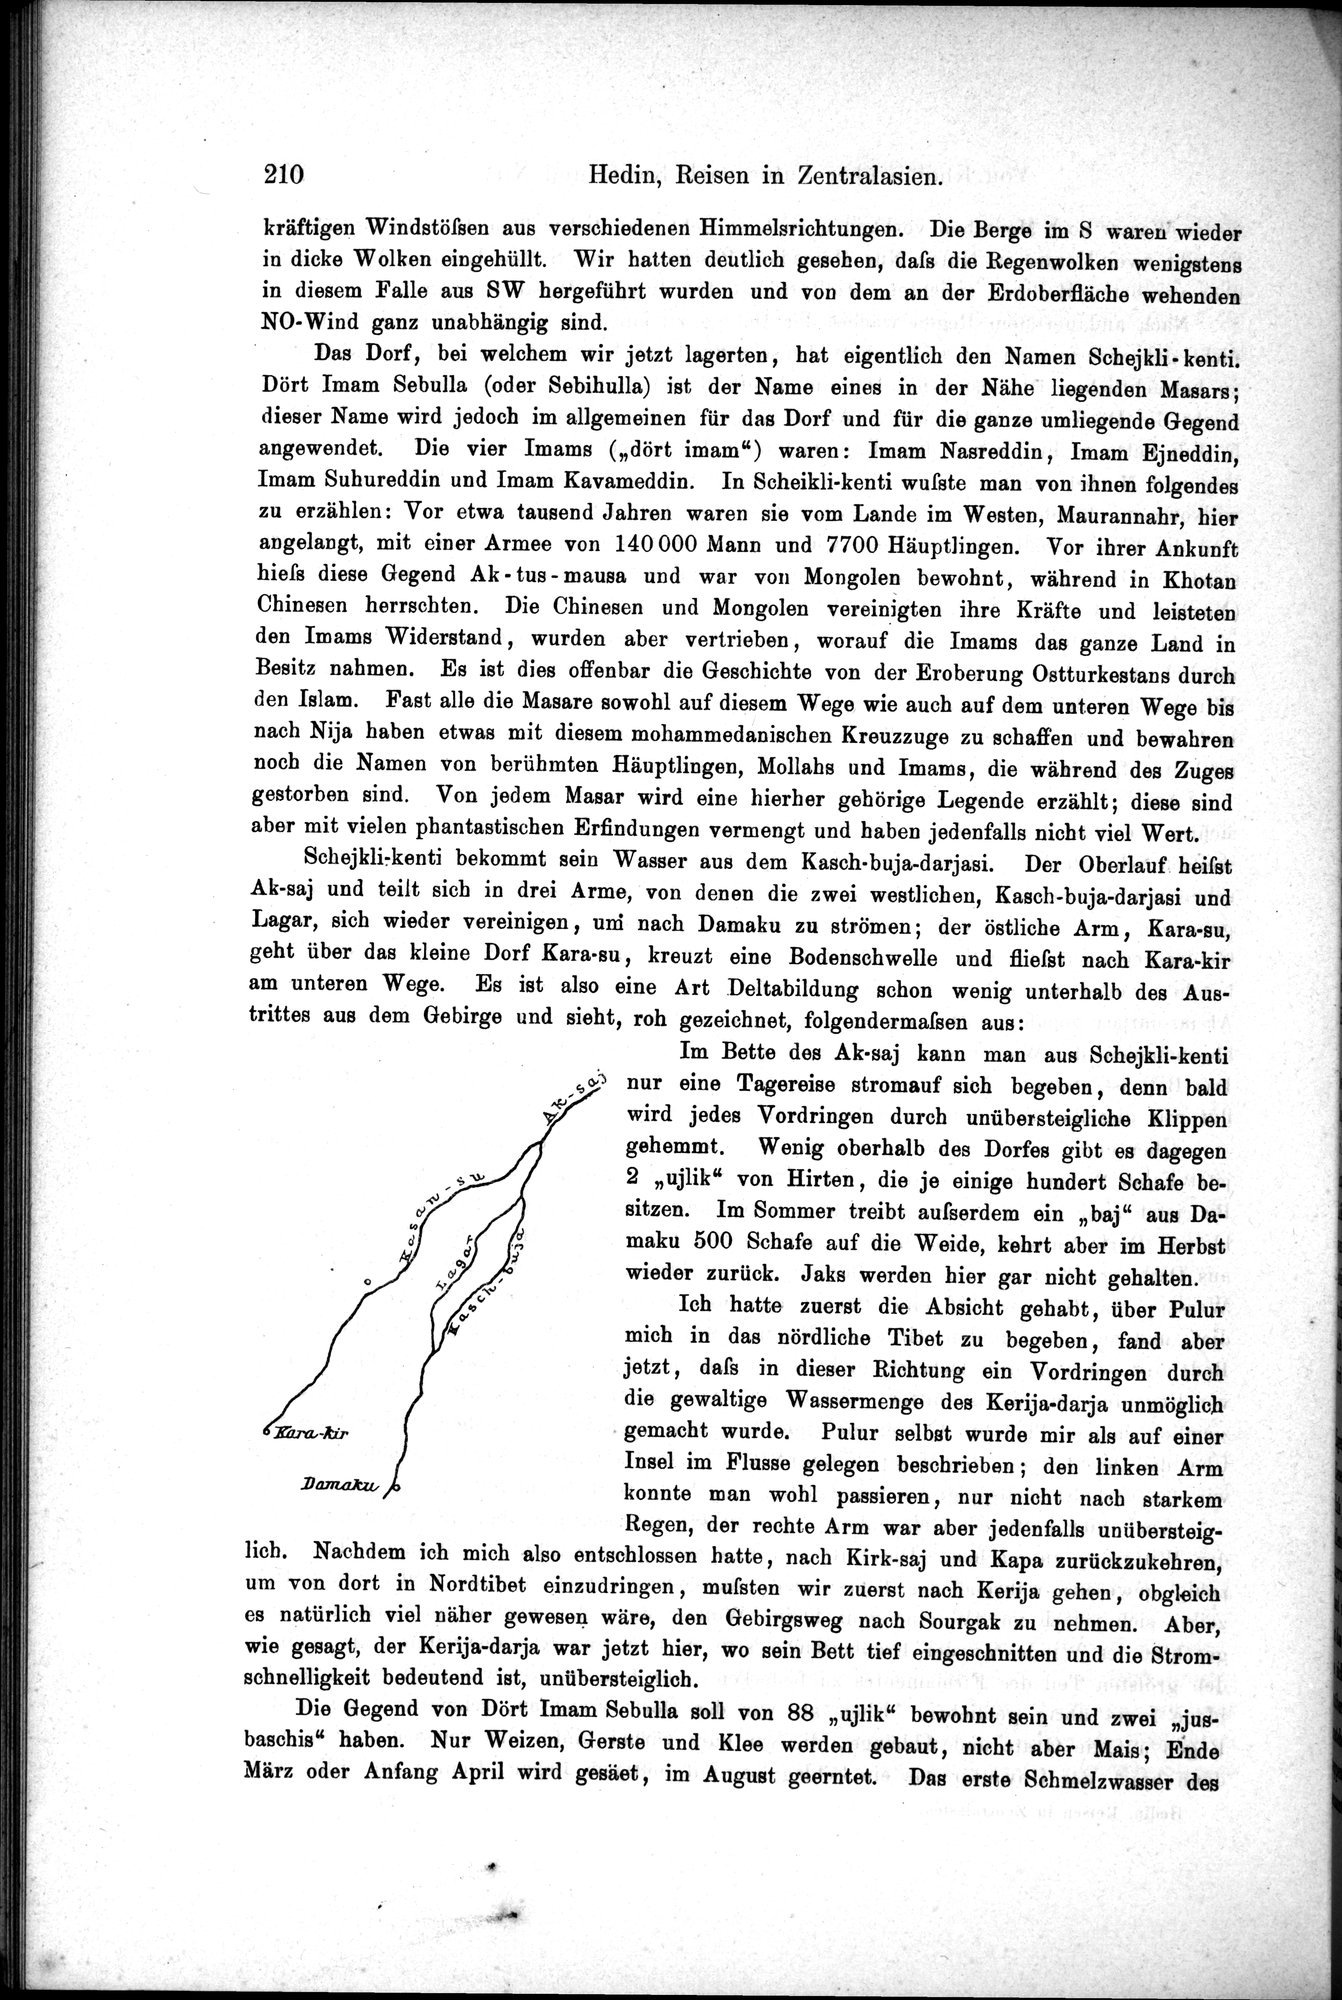 Die Geographische-Wissenschaftlichen Ergebnisse meiner Reisen in Zentralasien, 1894-1897 : vol.1 / Page 222 (Grayscale High Resolution Image)